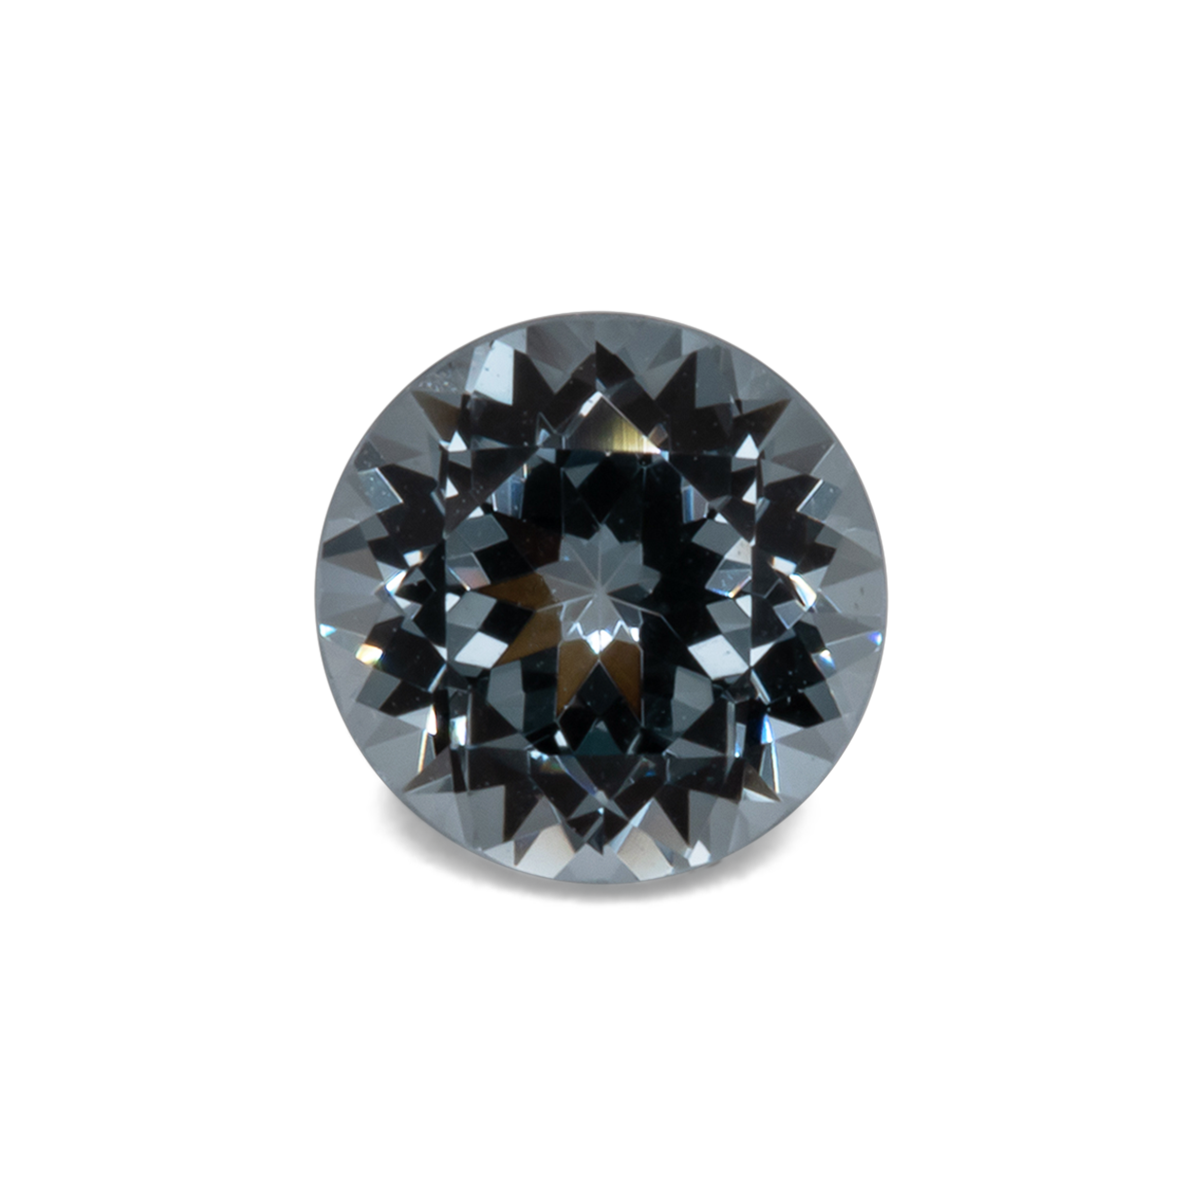 Spinell - blau/grau, rund, 5,1x5,1 mm, 0,57 cts, Nr. SP90012